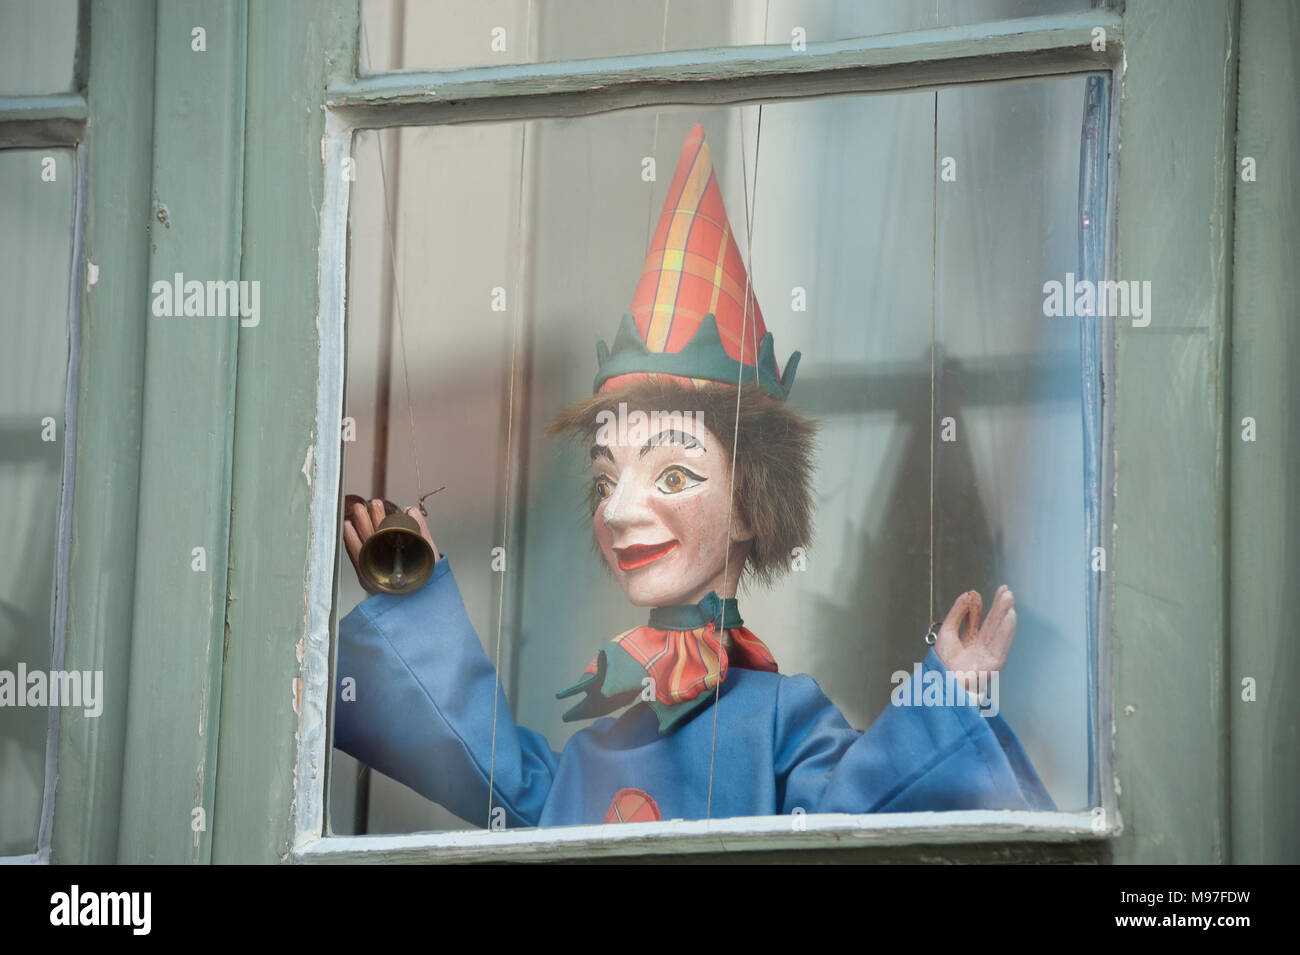 Theaterfigurenmuseum, Clown Puppet im Fenster des Museum für Theater Puppen,  Lübeck, Ostsee, Schleswig-Holstein, Deutschland, Europa Stockfotografie -  Alamy